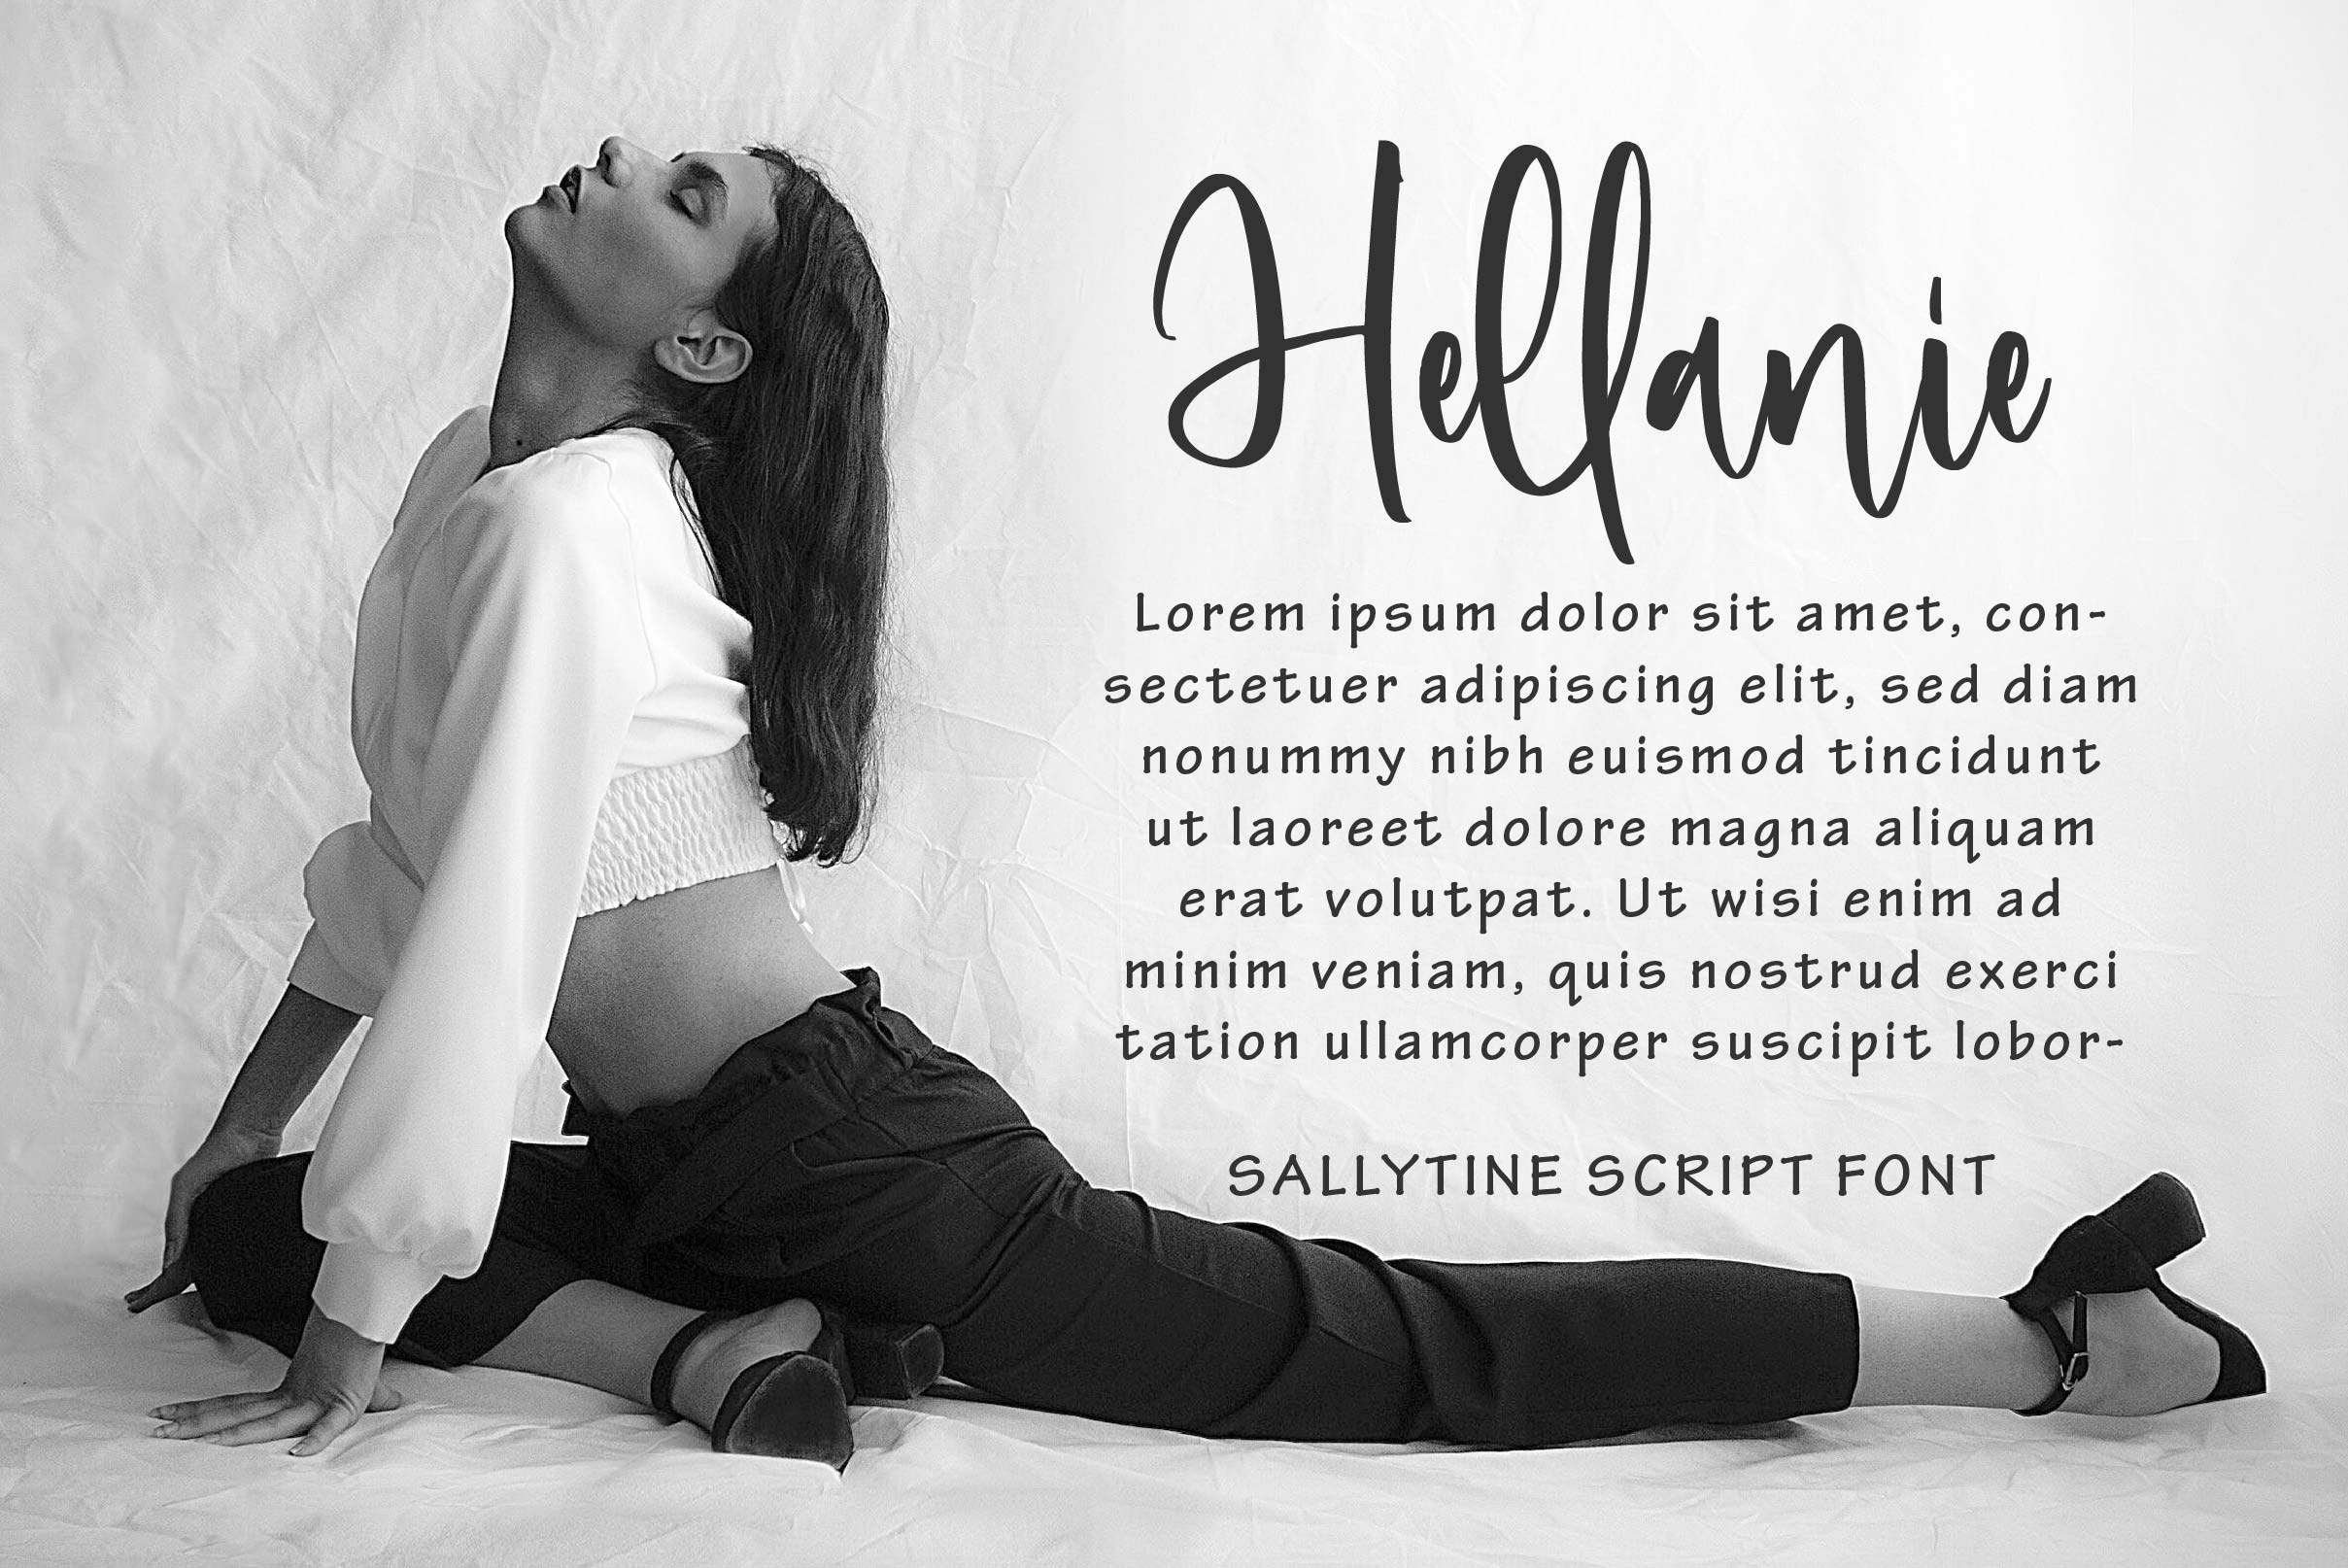 Sallytine